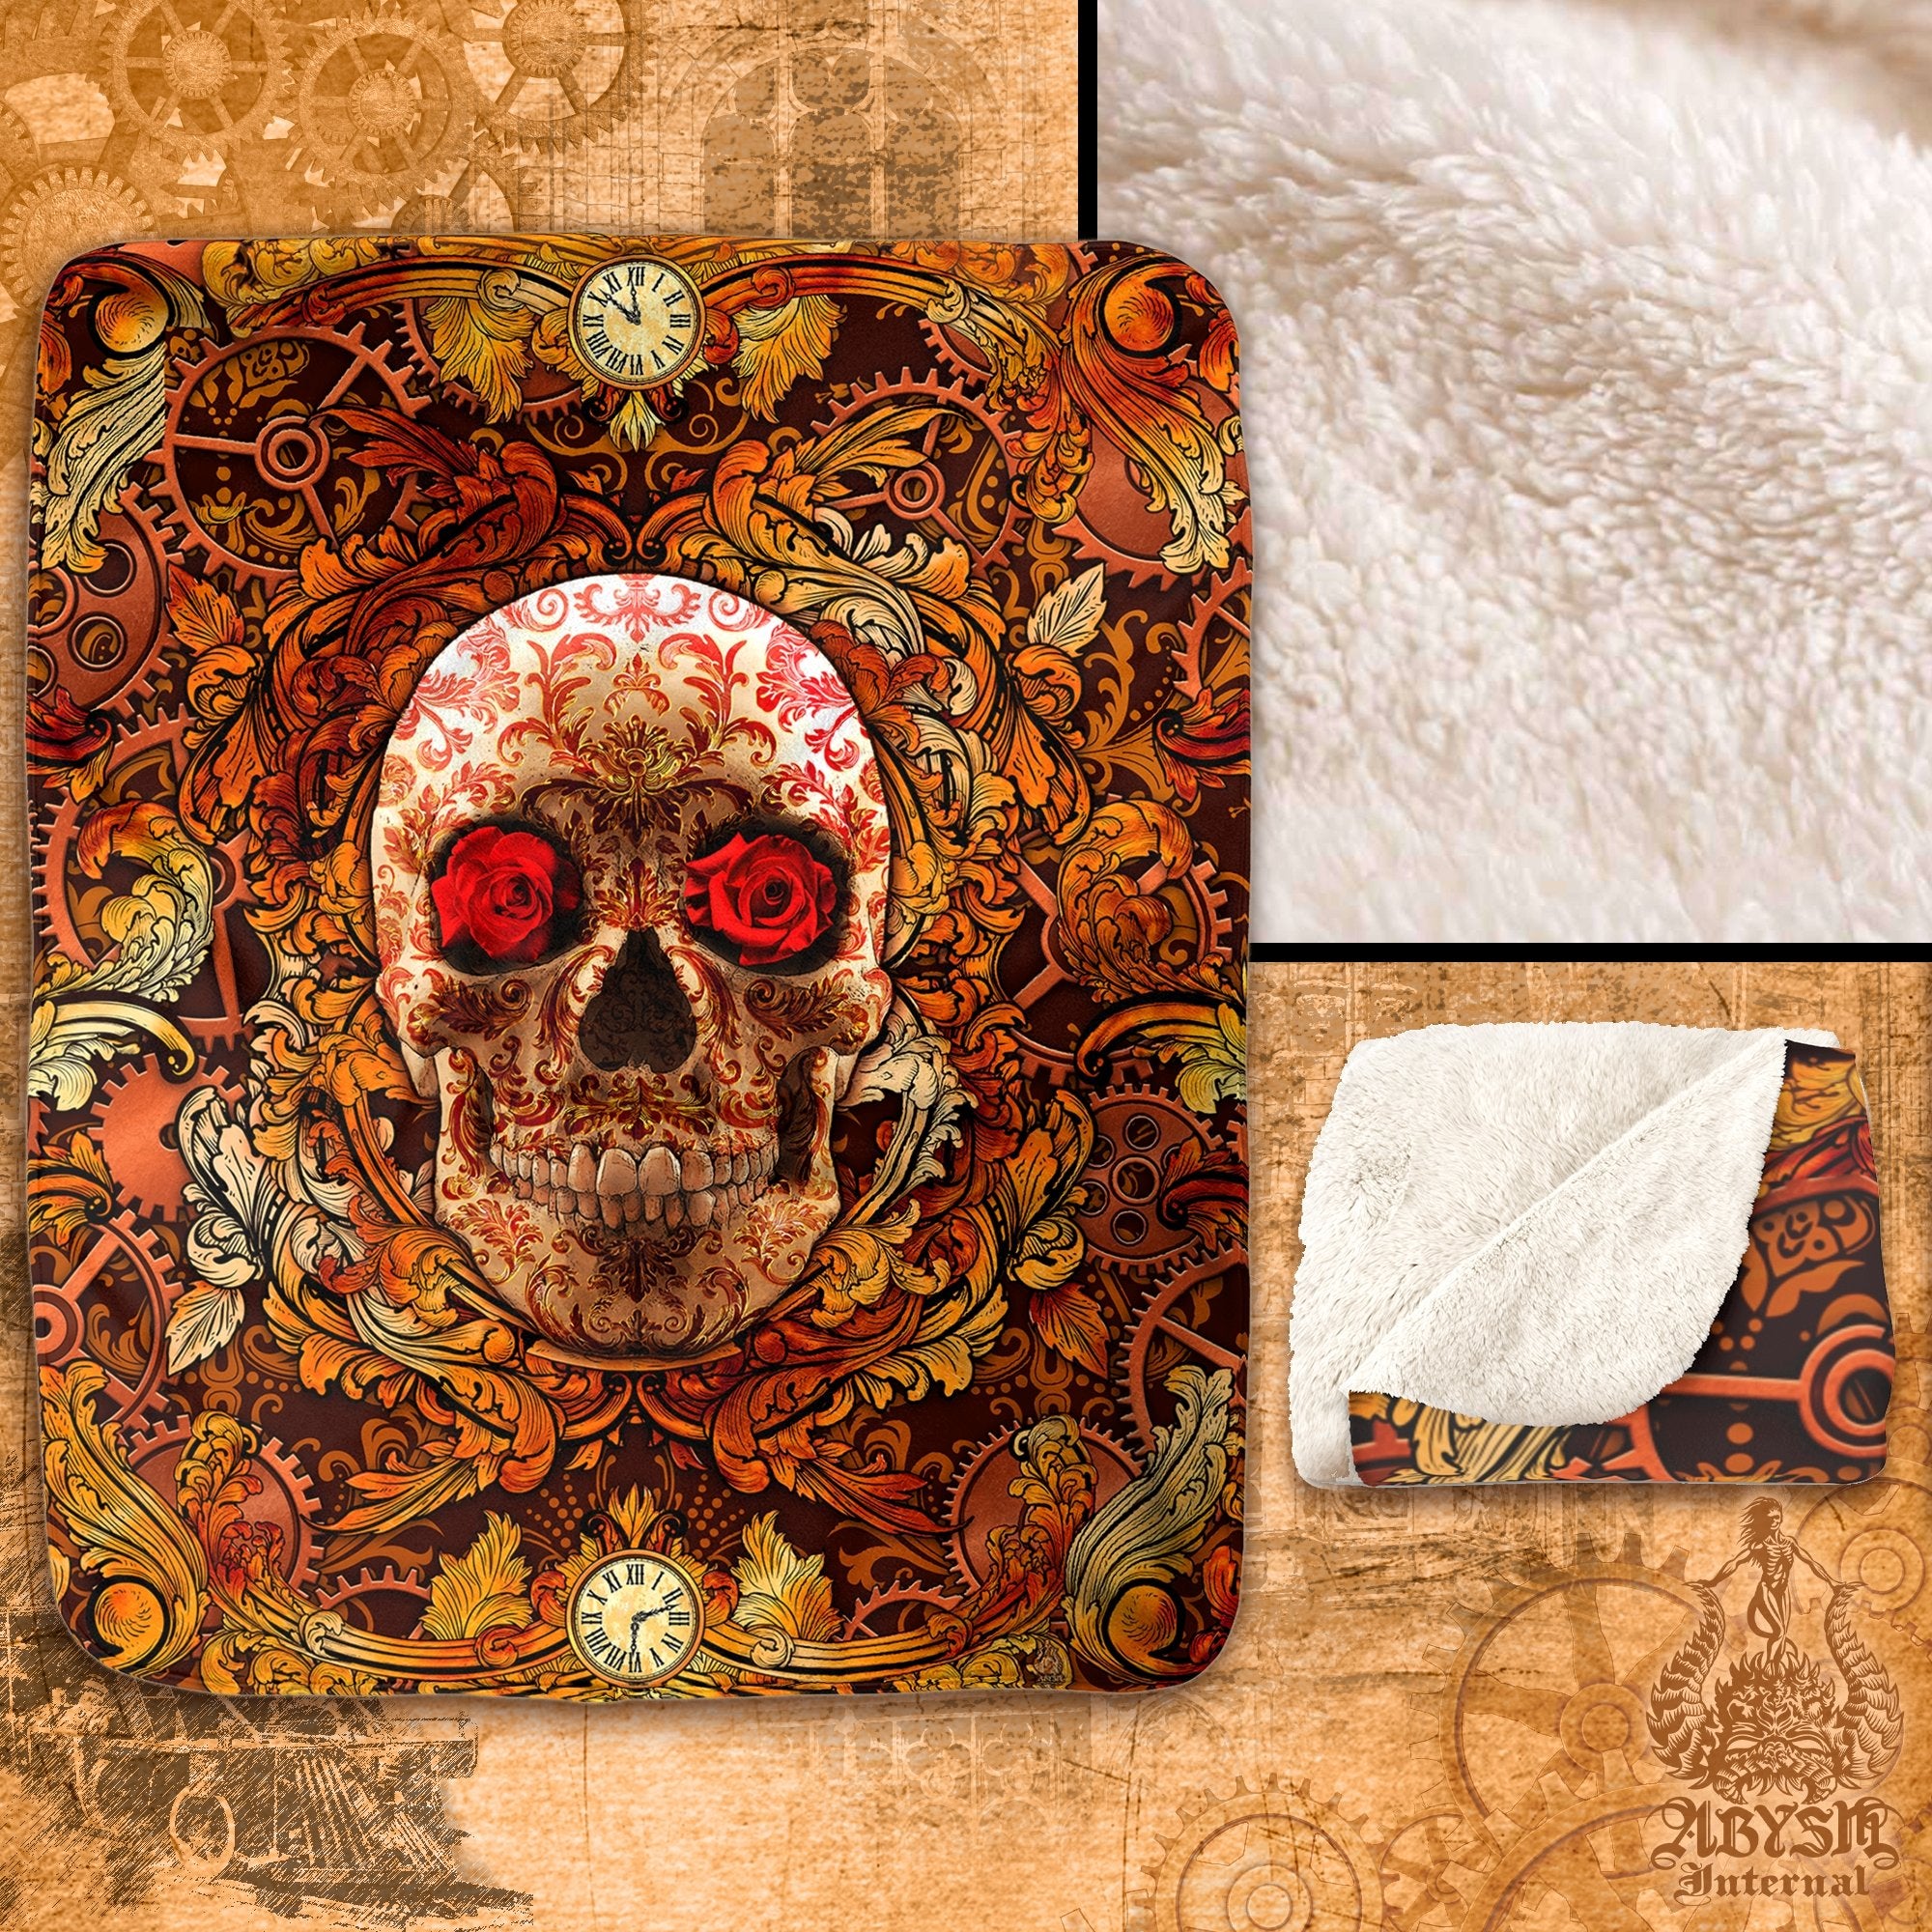 Steampunk Throw Fleece Blanket, Macabre Art, Victorian Decor - Skull - Abysm Internal